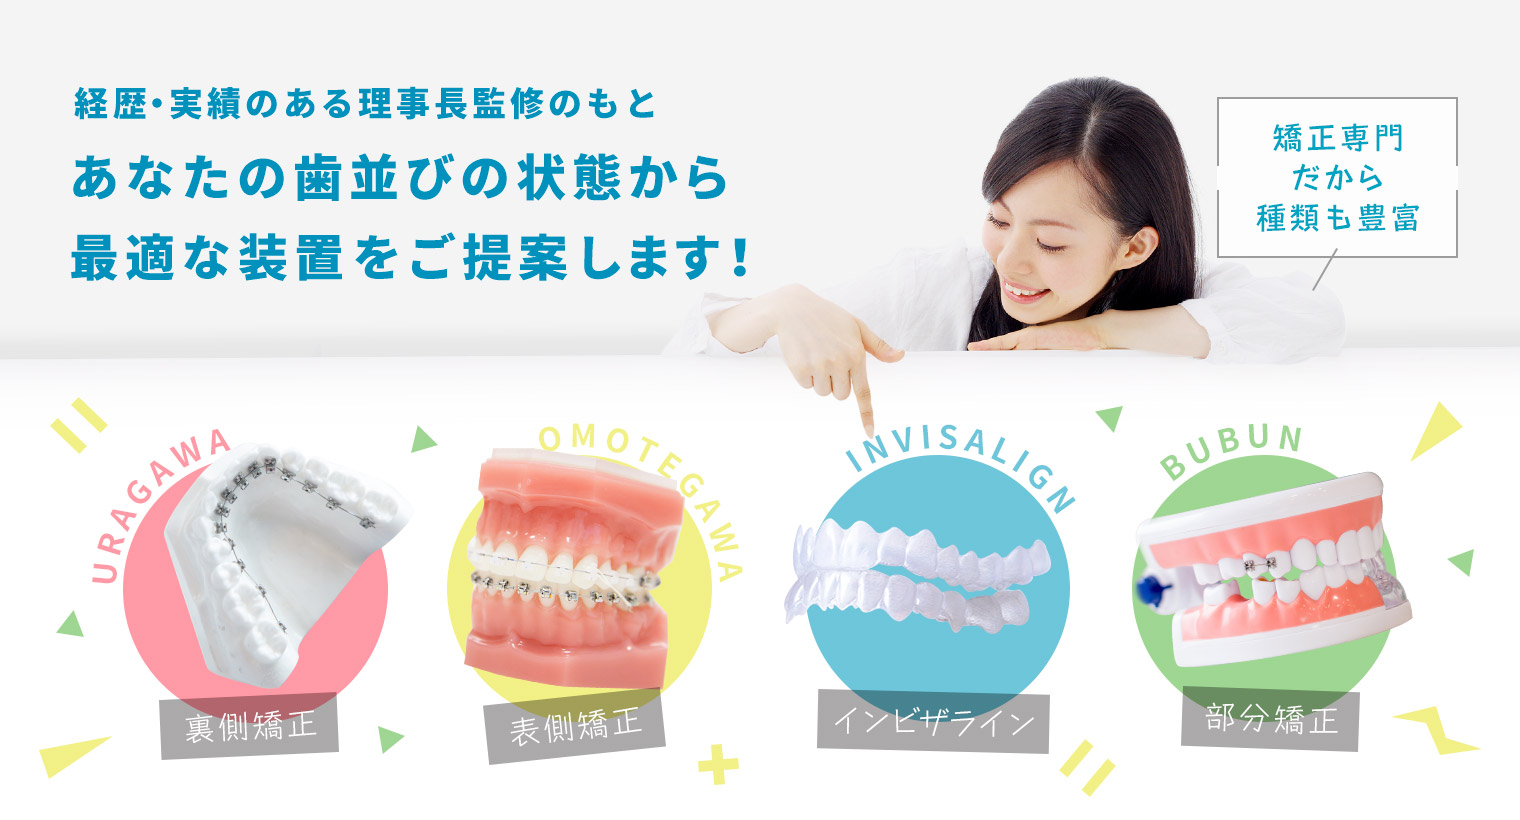 あなたの歯並びの状態から最適な装置をご提案します！